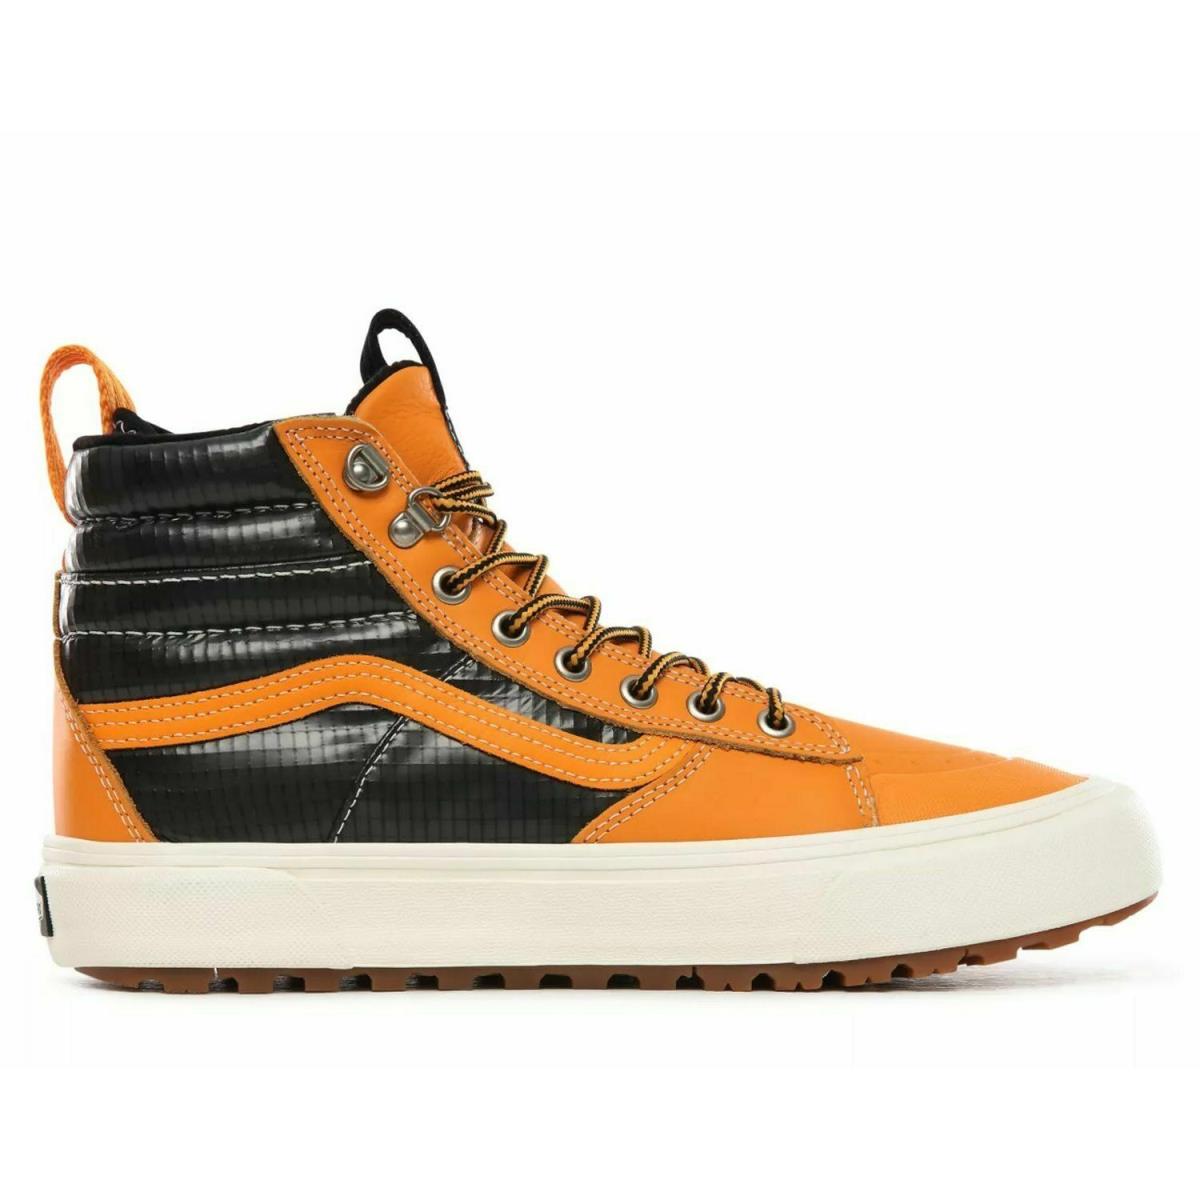 Vans Sk8 Hi Mte 2.0 DX All Weather Men Boot Shoes Apricot/black Size 6.5